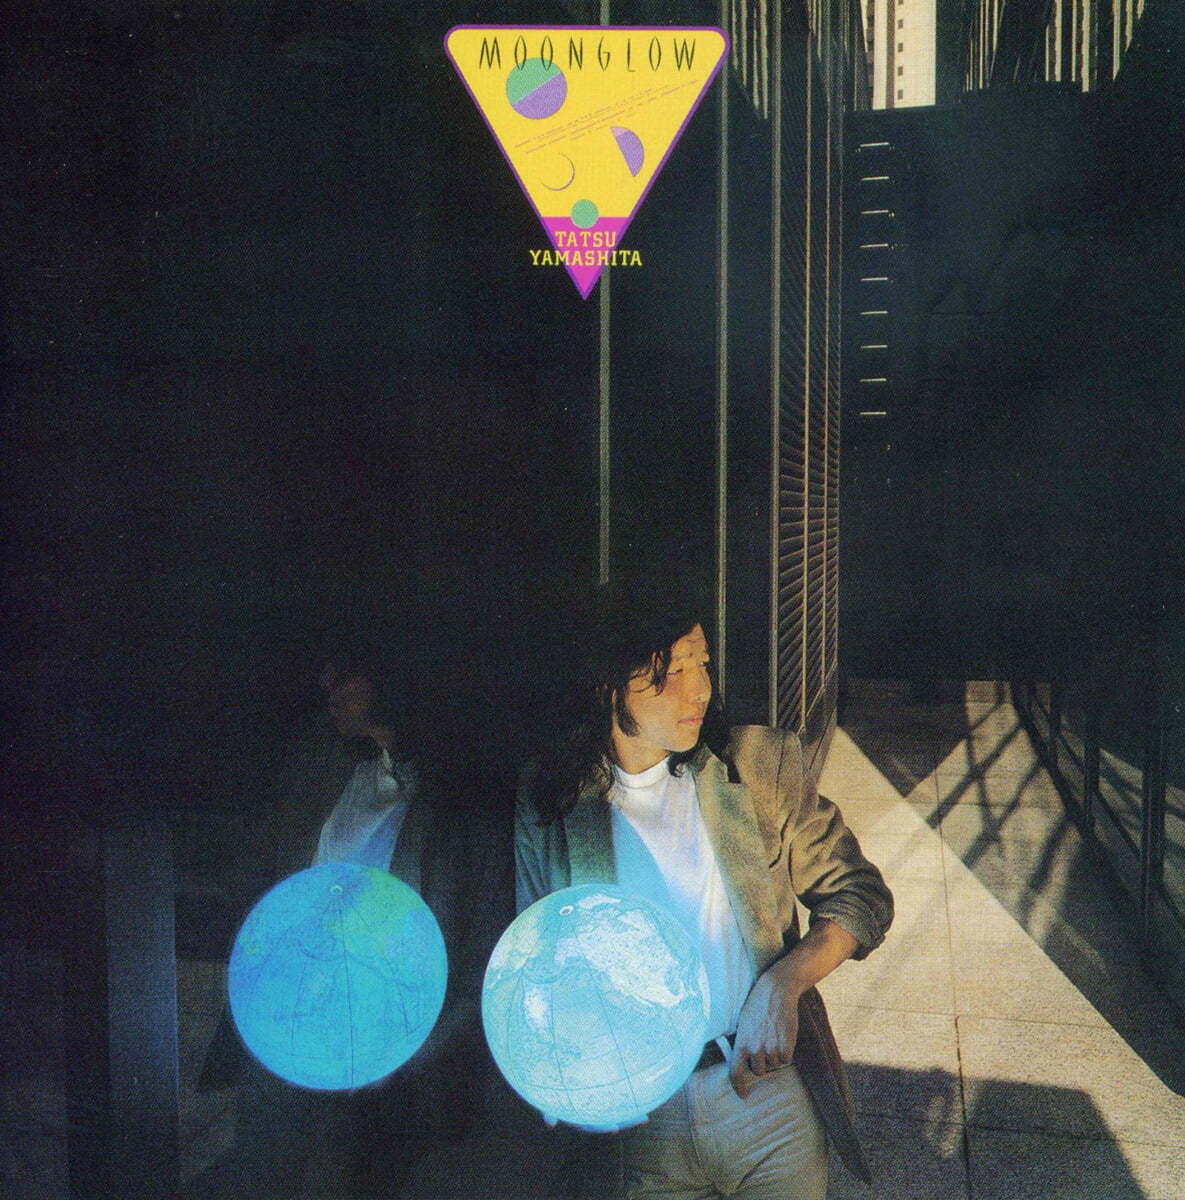 Yamashita Tatsuro (야마시타 타츠로) - Moonglow [LP]